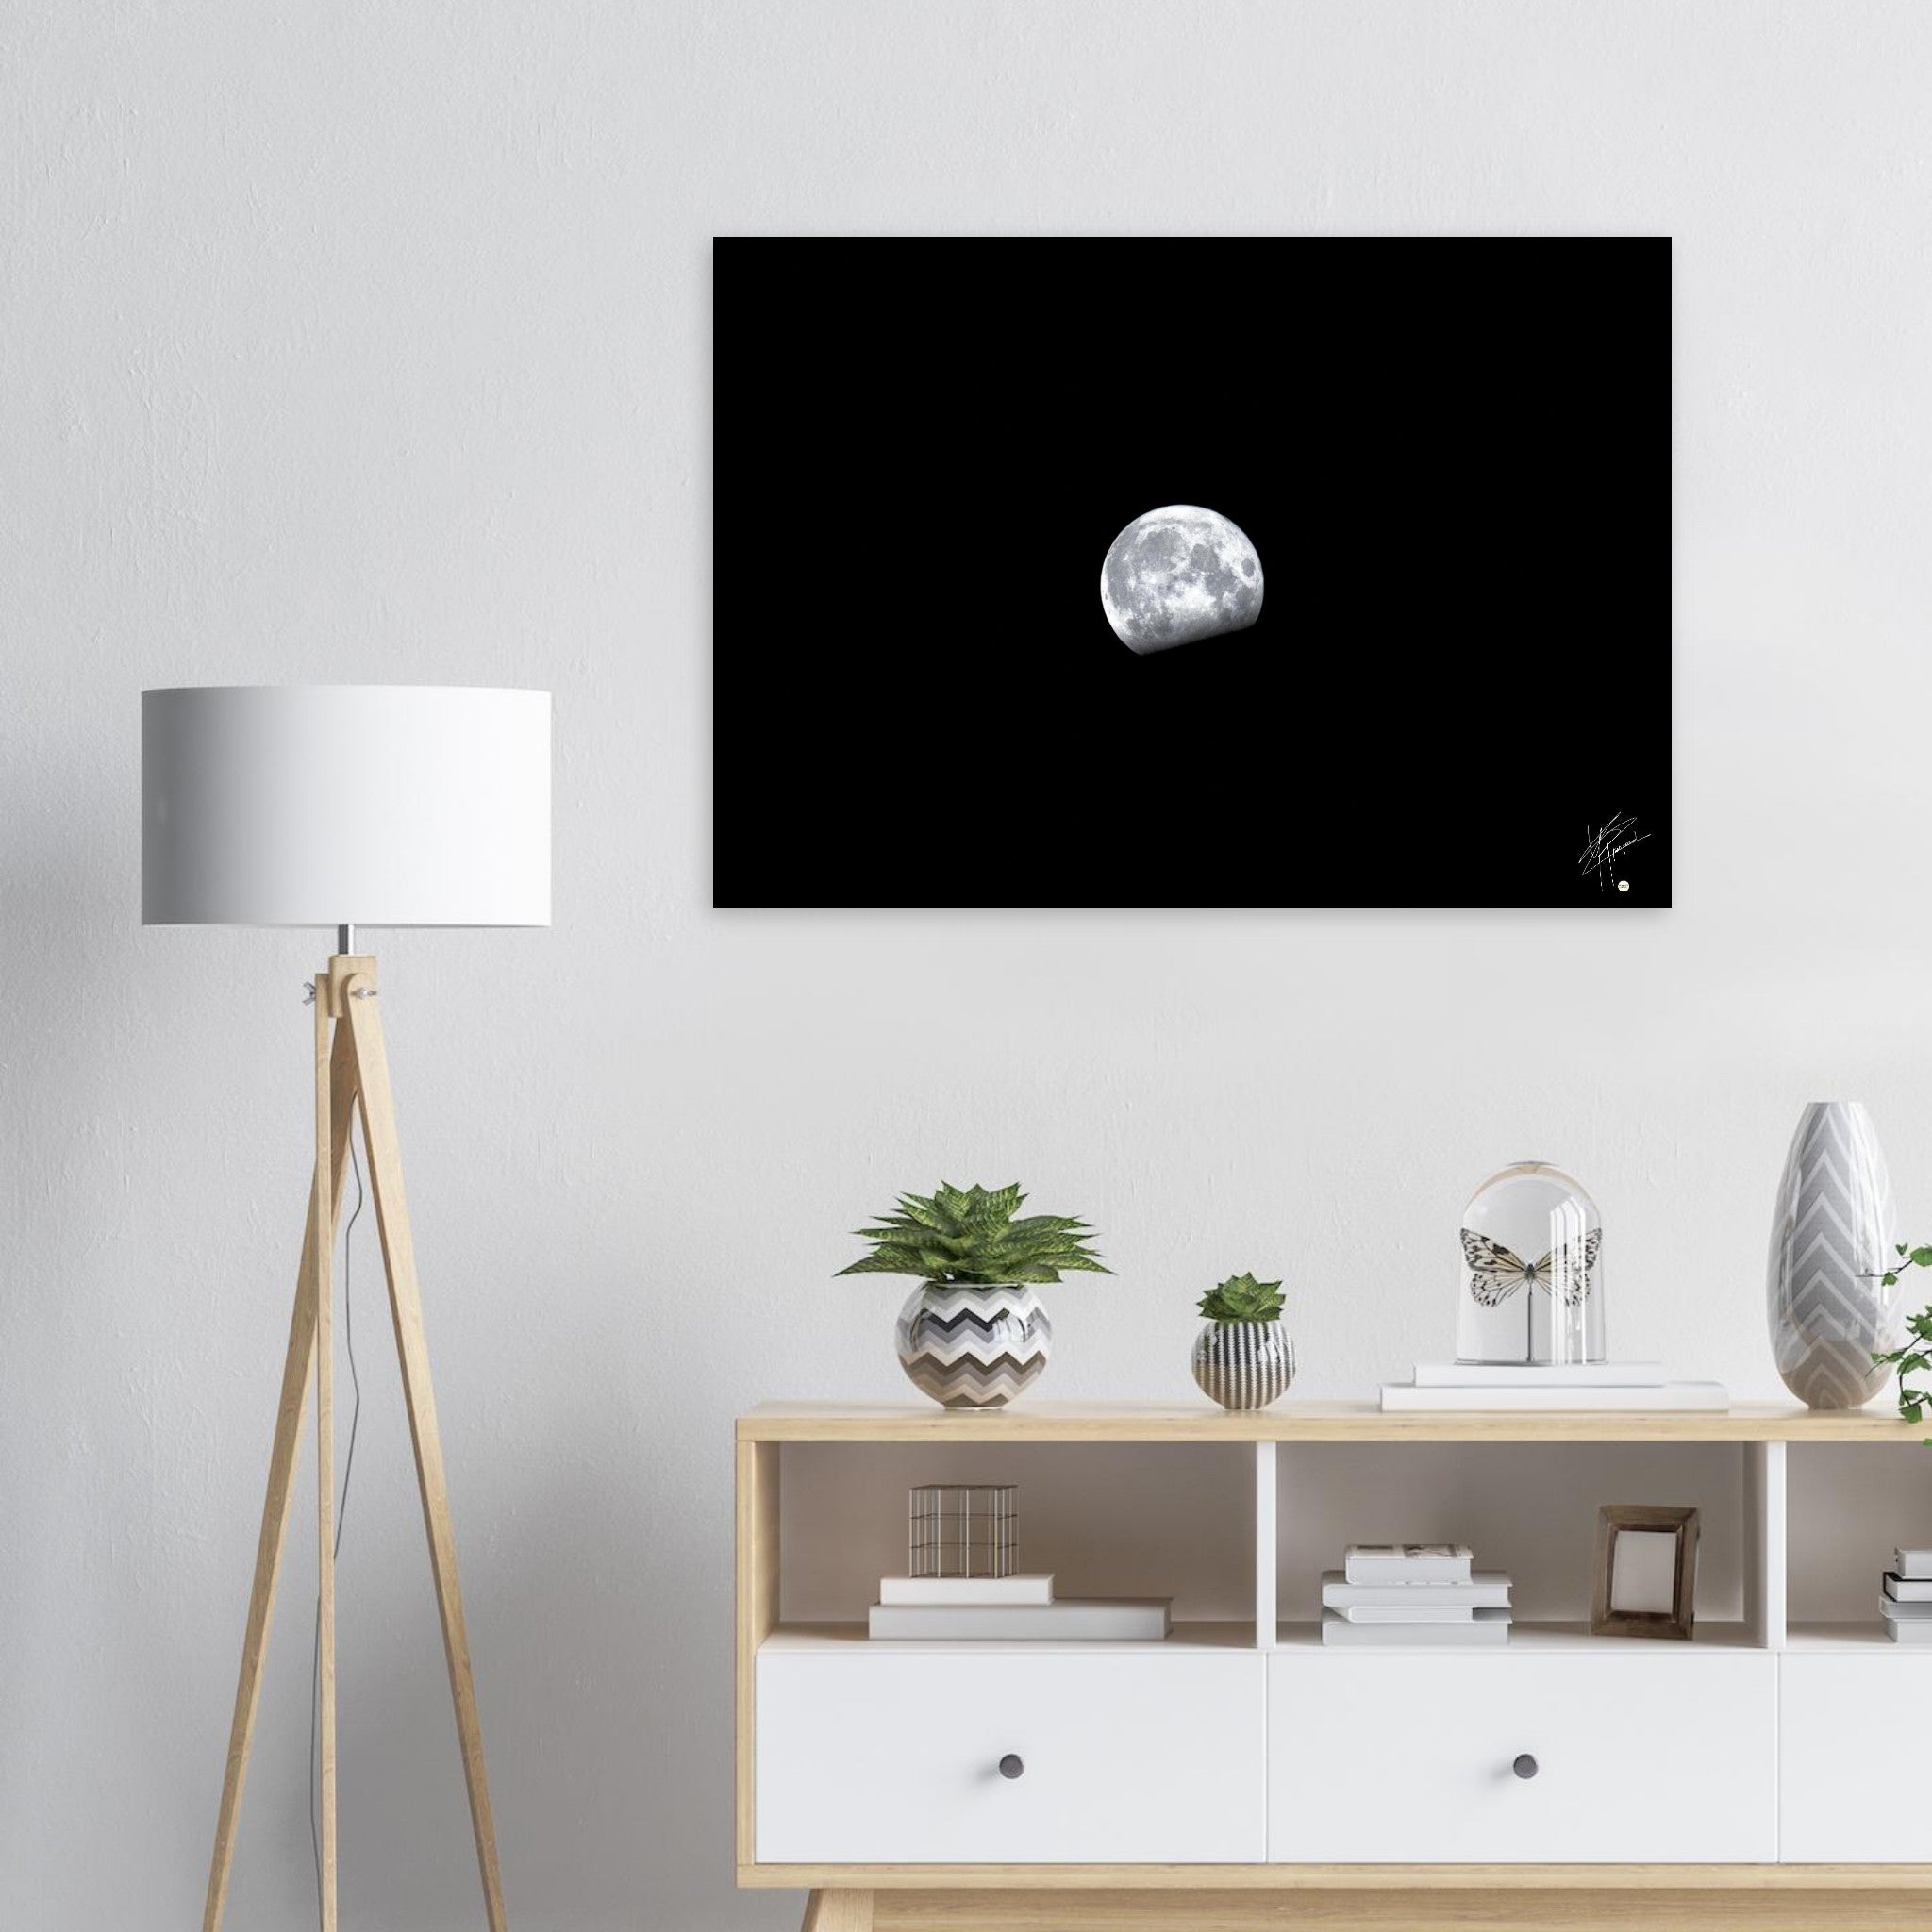 Image détaillée de la Lune, imprimée sur un tableau en aluminium DIBOND® haut de gamme, mettant en évidence chaque cratère et aspect de notre satellite naturel.